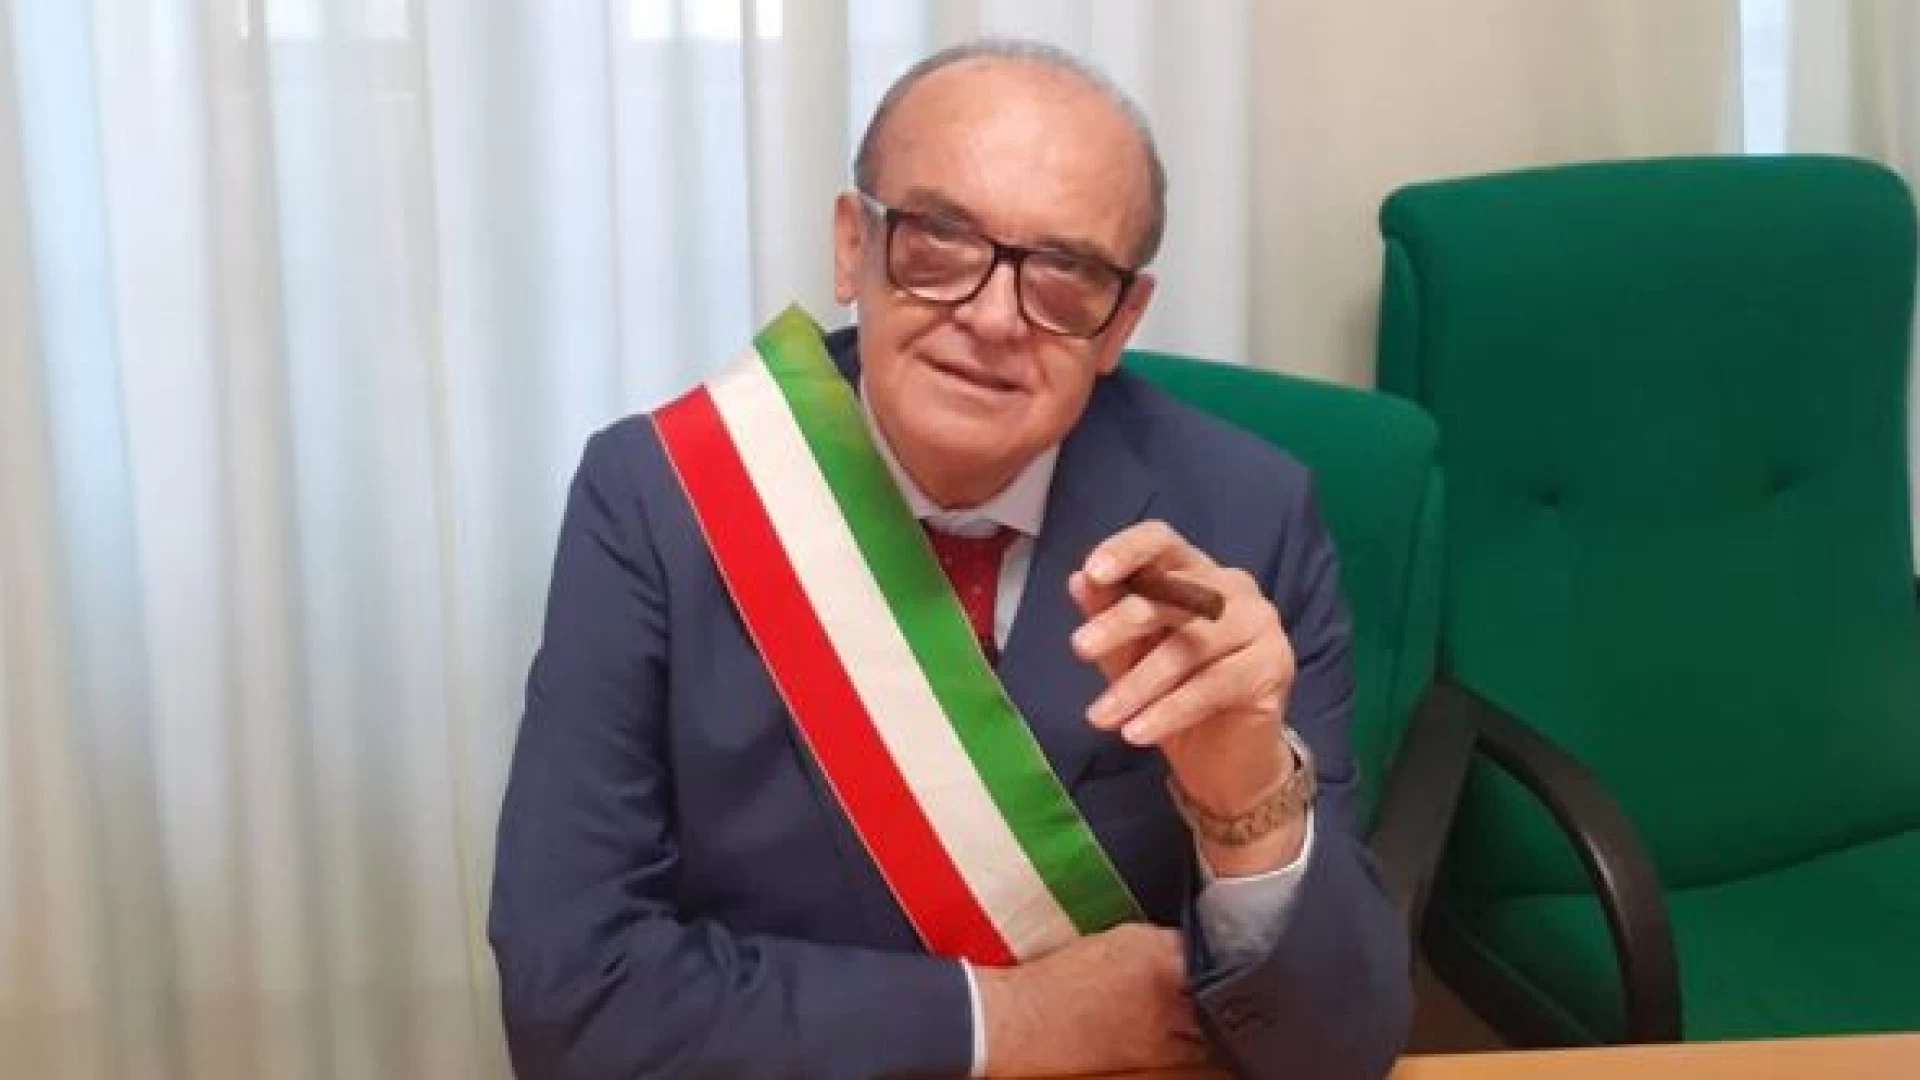 Montaquila: il sindaco Marciano Ricci corre ai ripari. Emanata nuova ordinanza per contenere i contagi. "Occorre essere tutti responsabili".